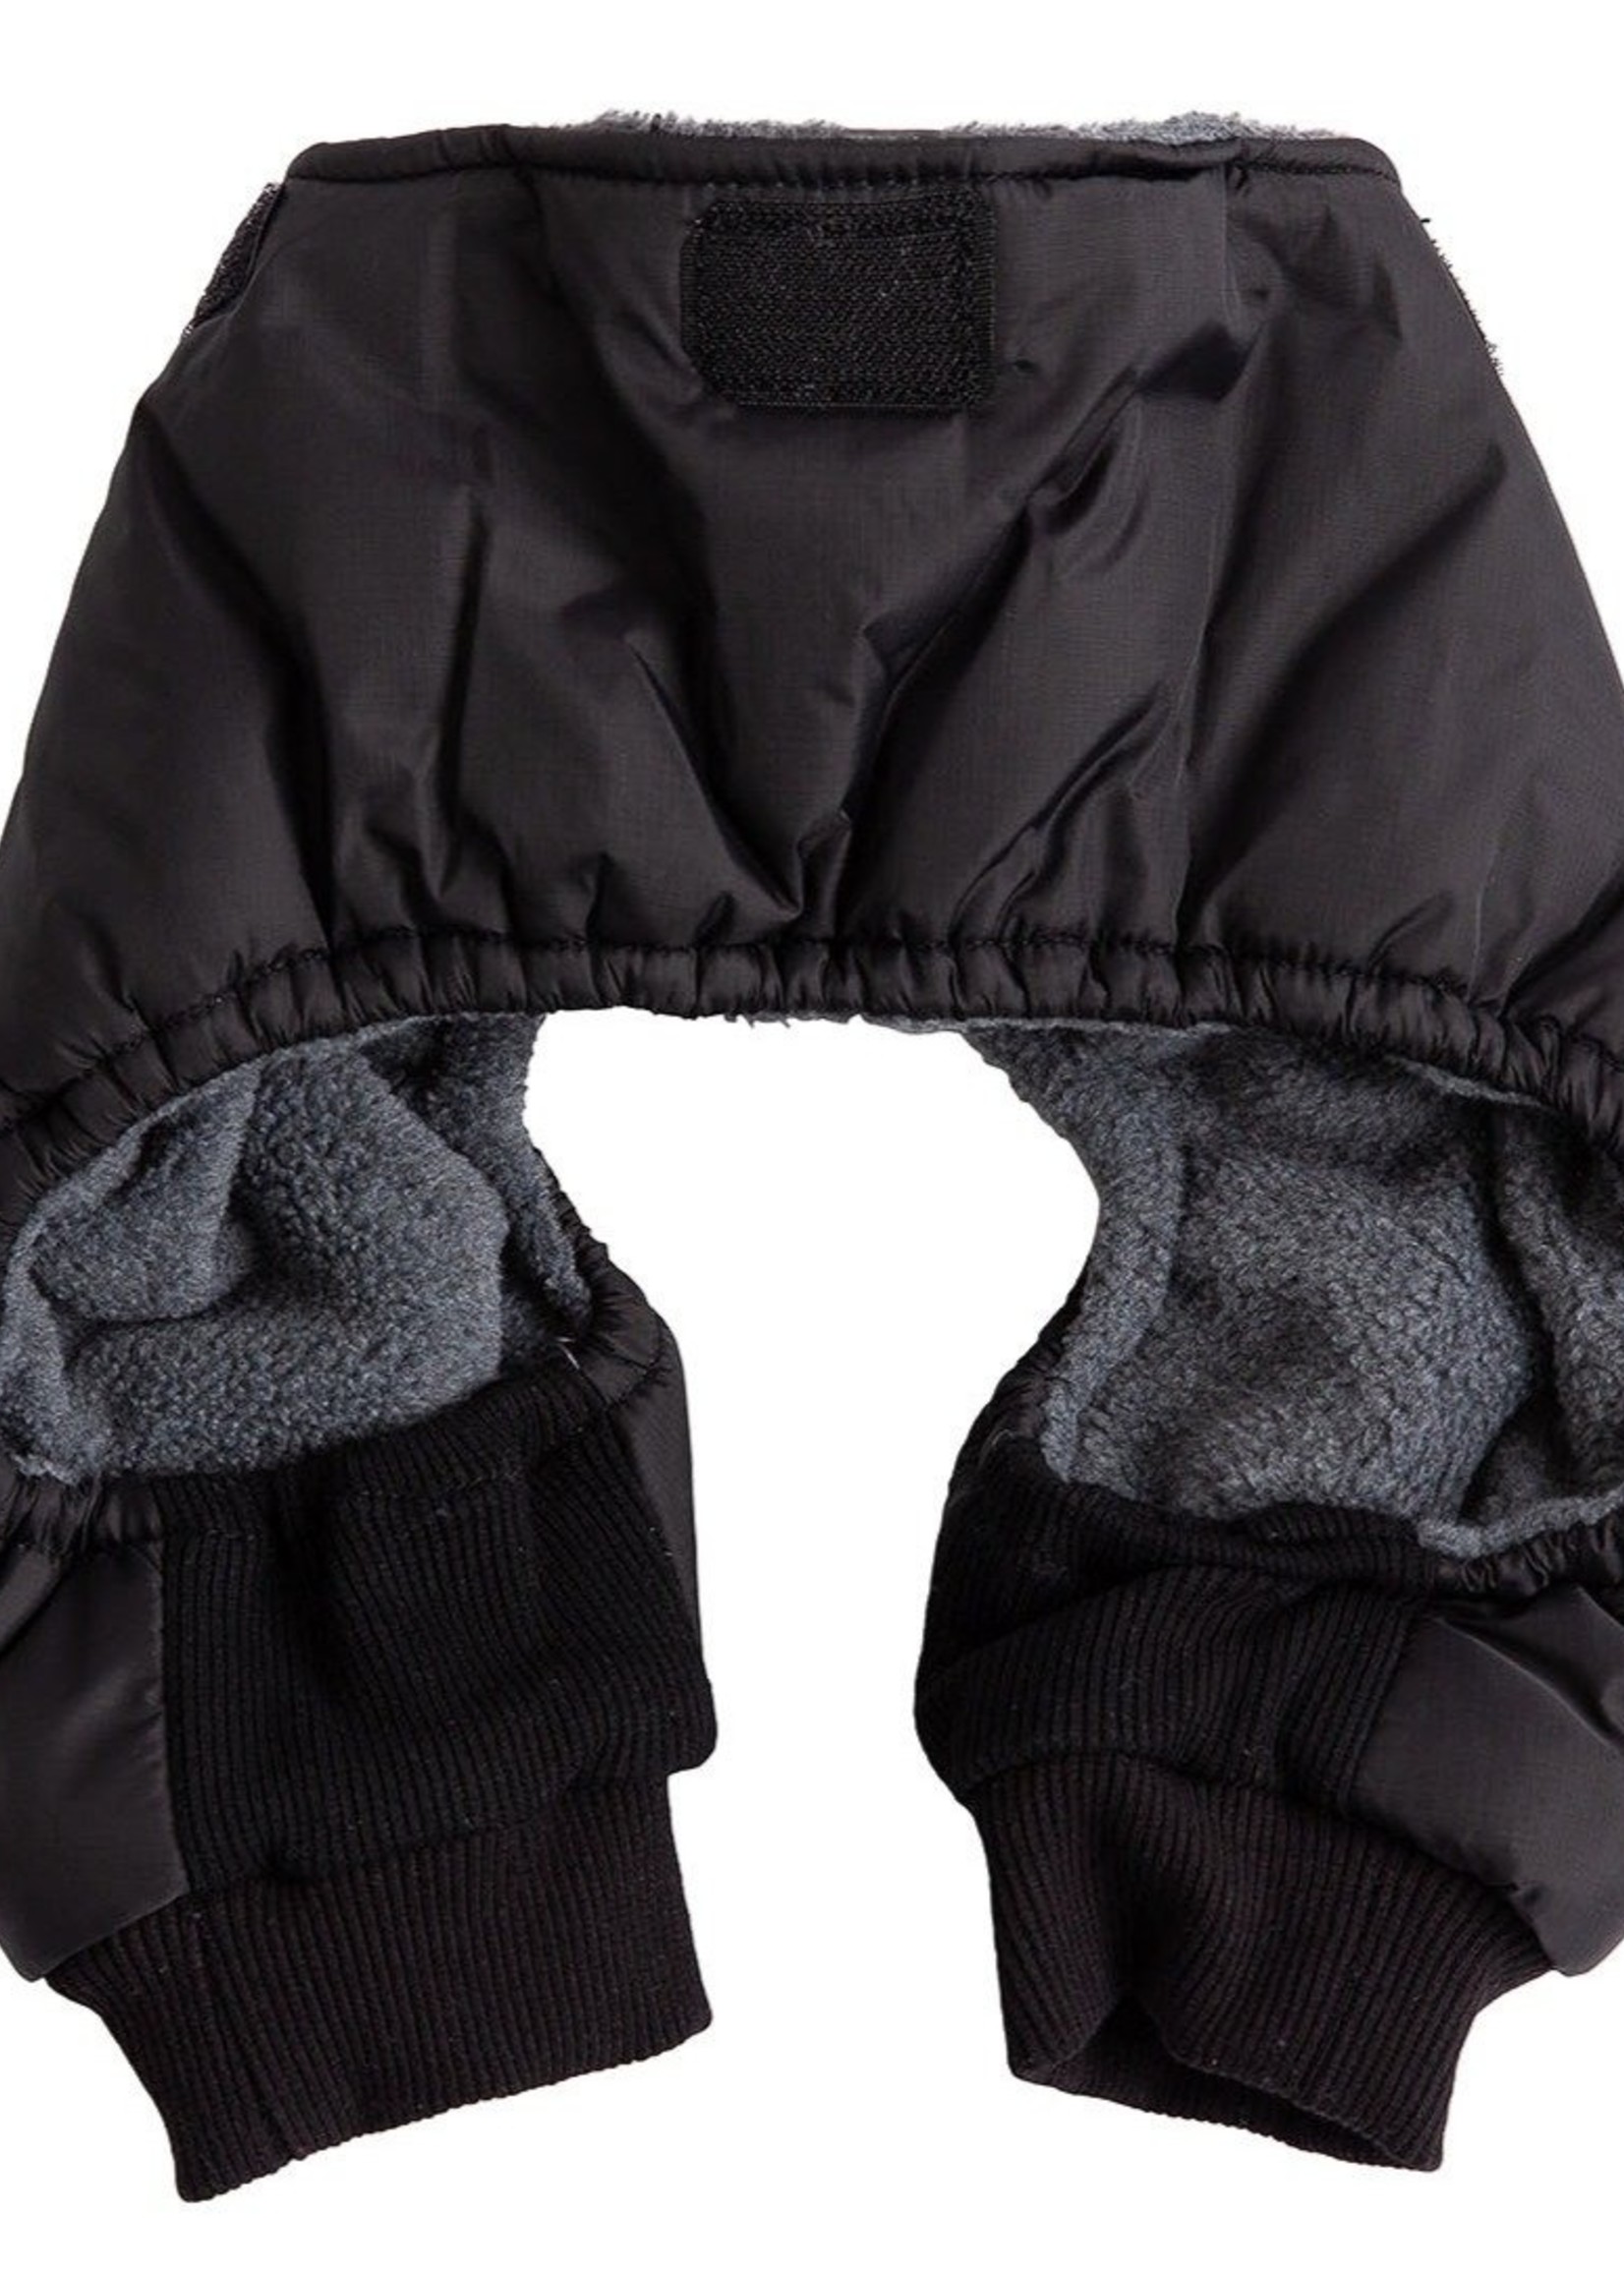 GF PET - Elastofit Snowsuit Black